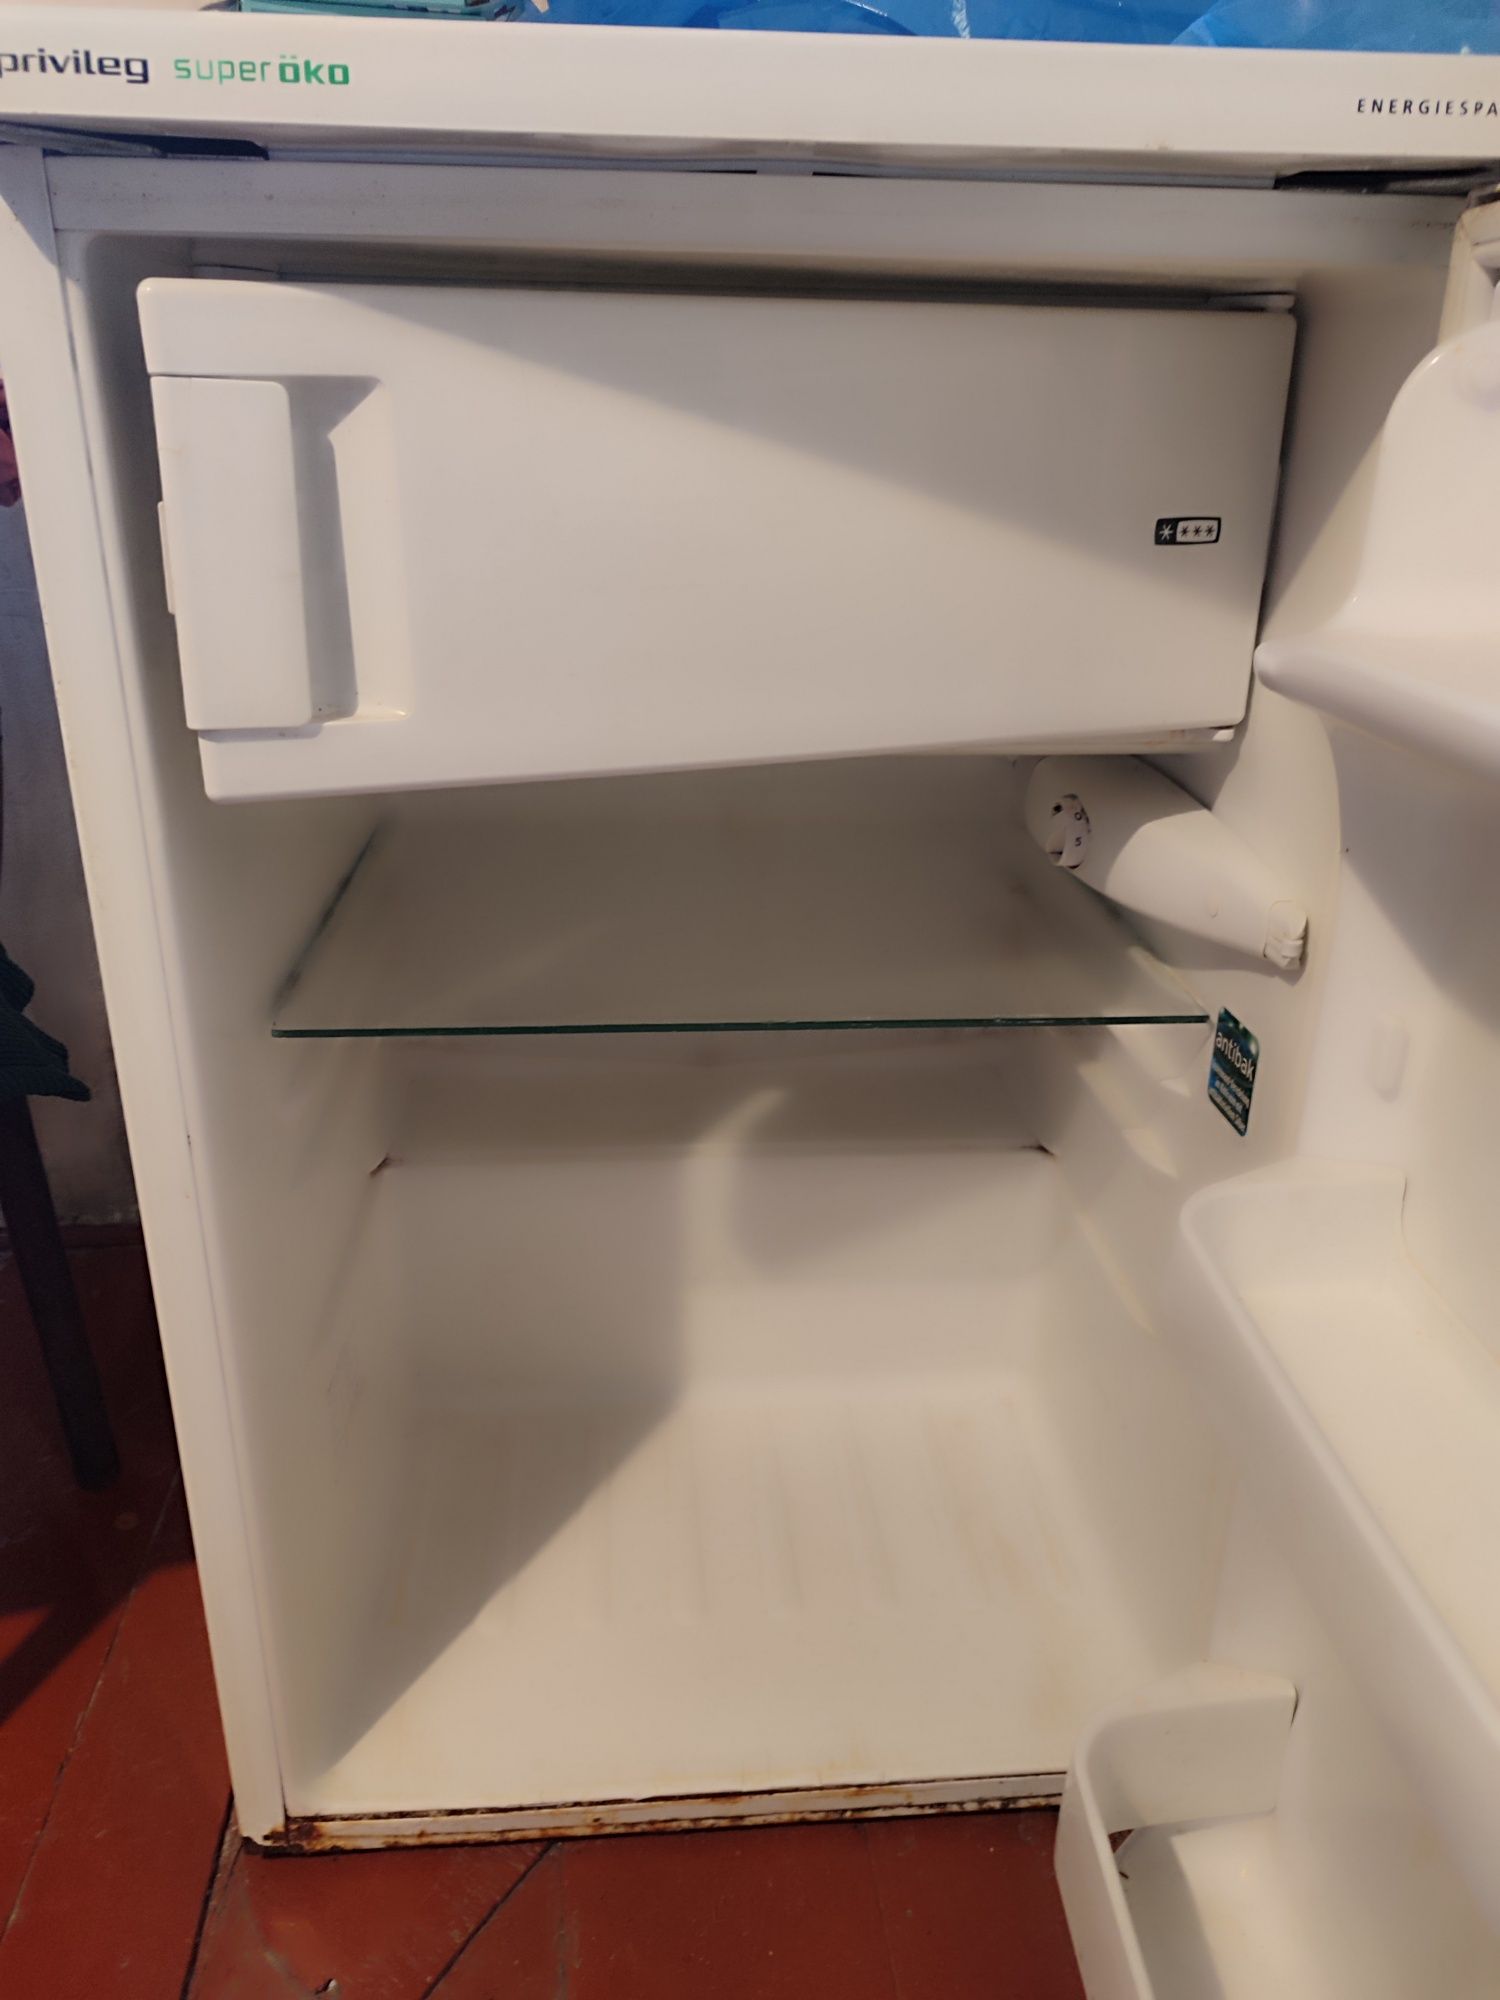 Продам Холодильник бу